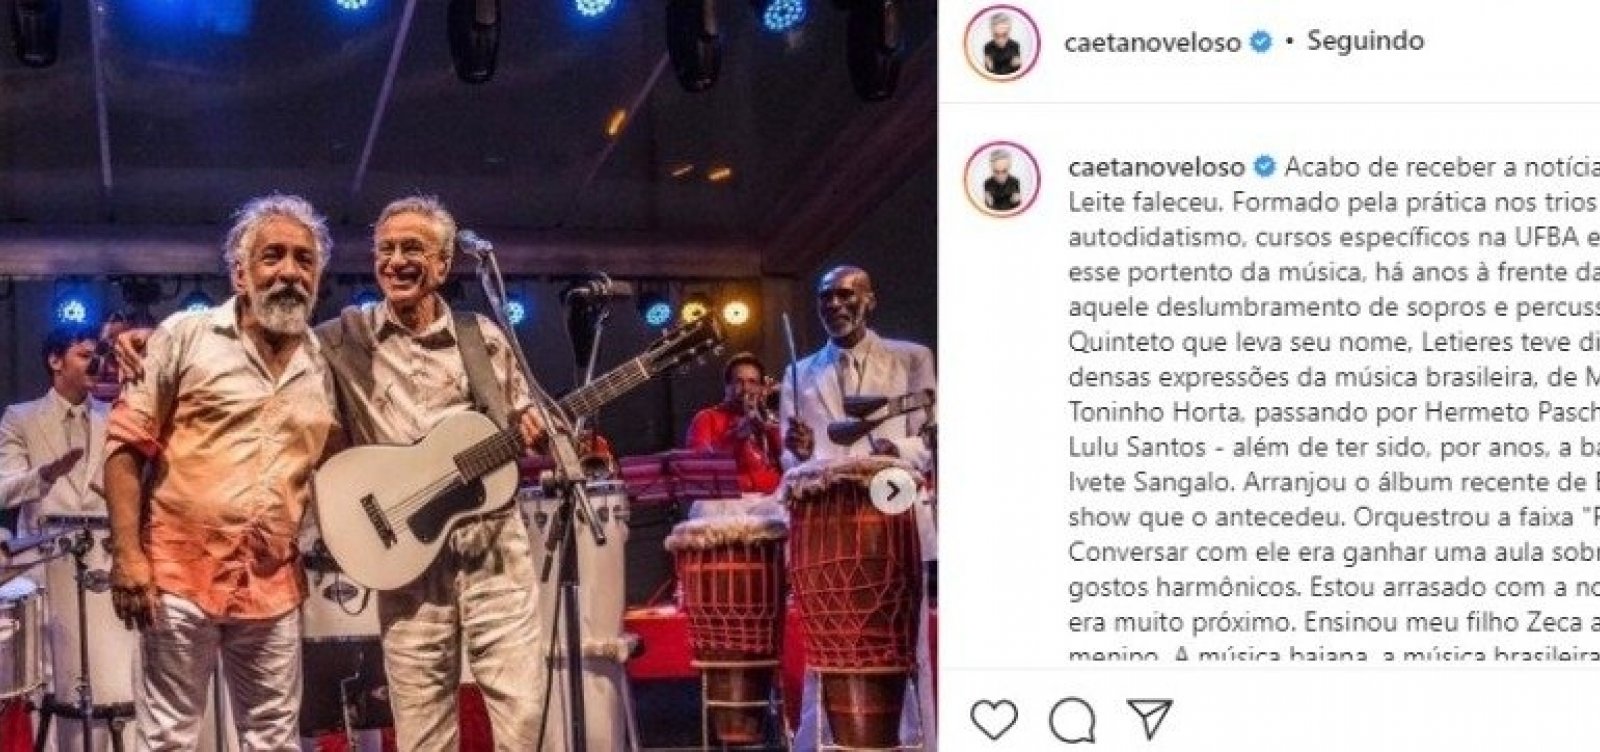 Artistas lamentam morte do maestro Letieres Leite: "Música perdeu hoje um de seus maiores fornecedores"